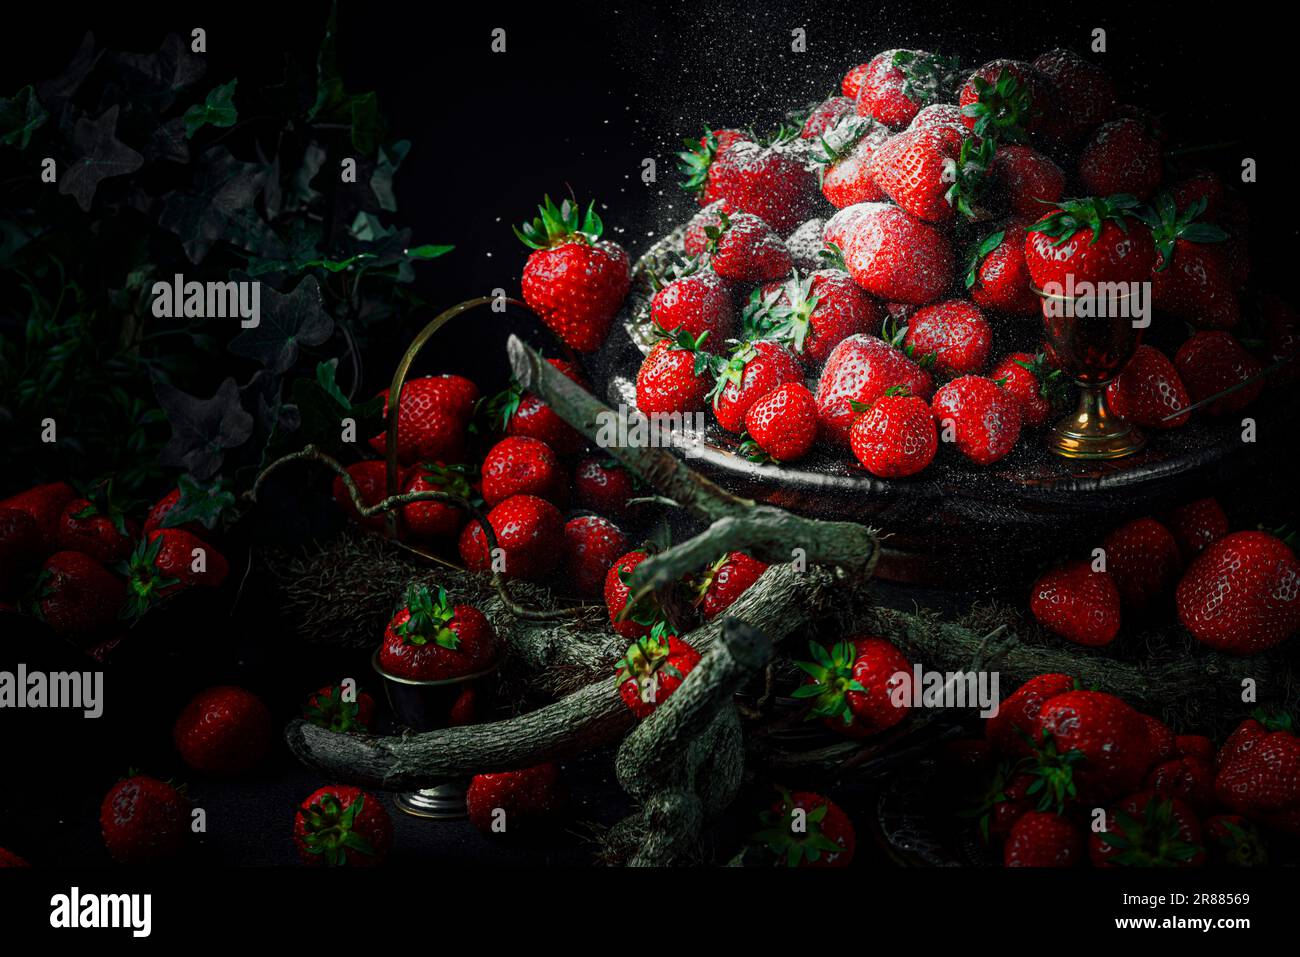 Fotografía artística de comida fotografías e imágenes de alta resolución -  Alamy